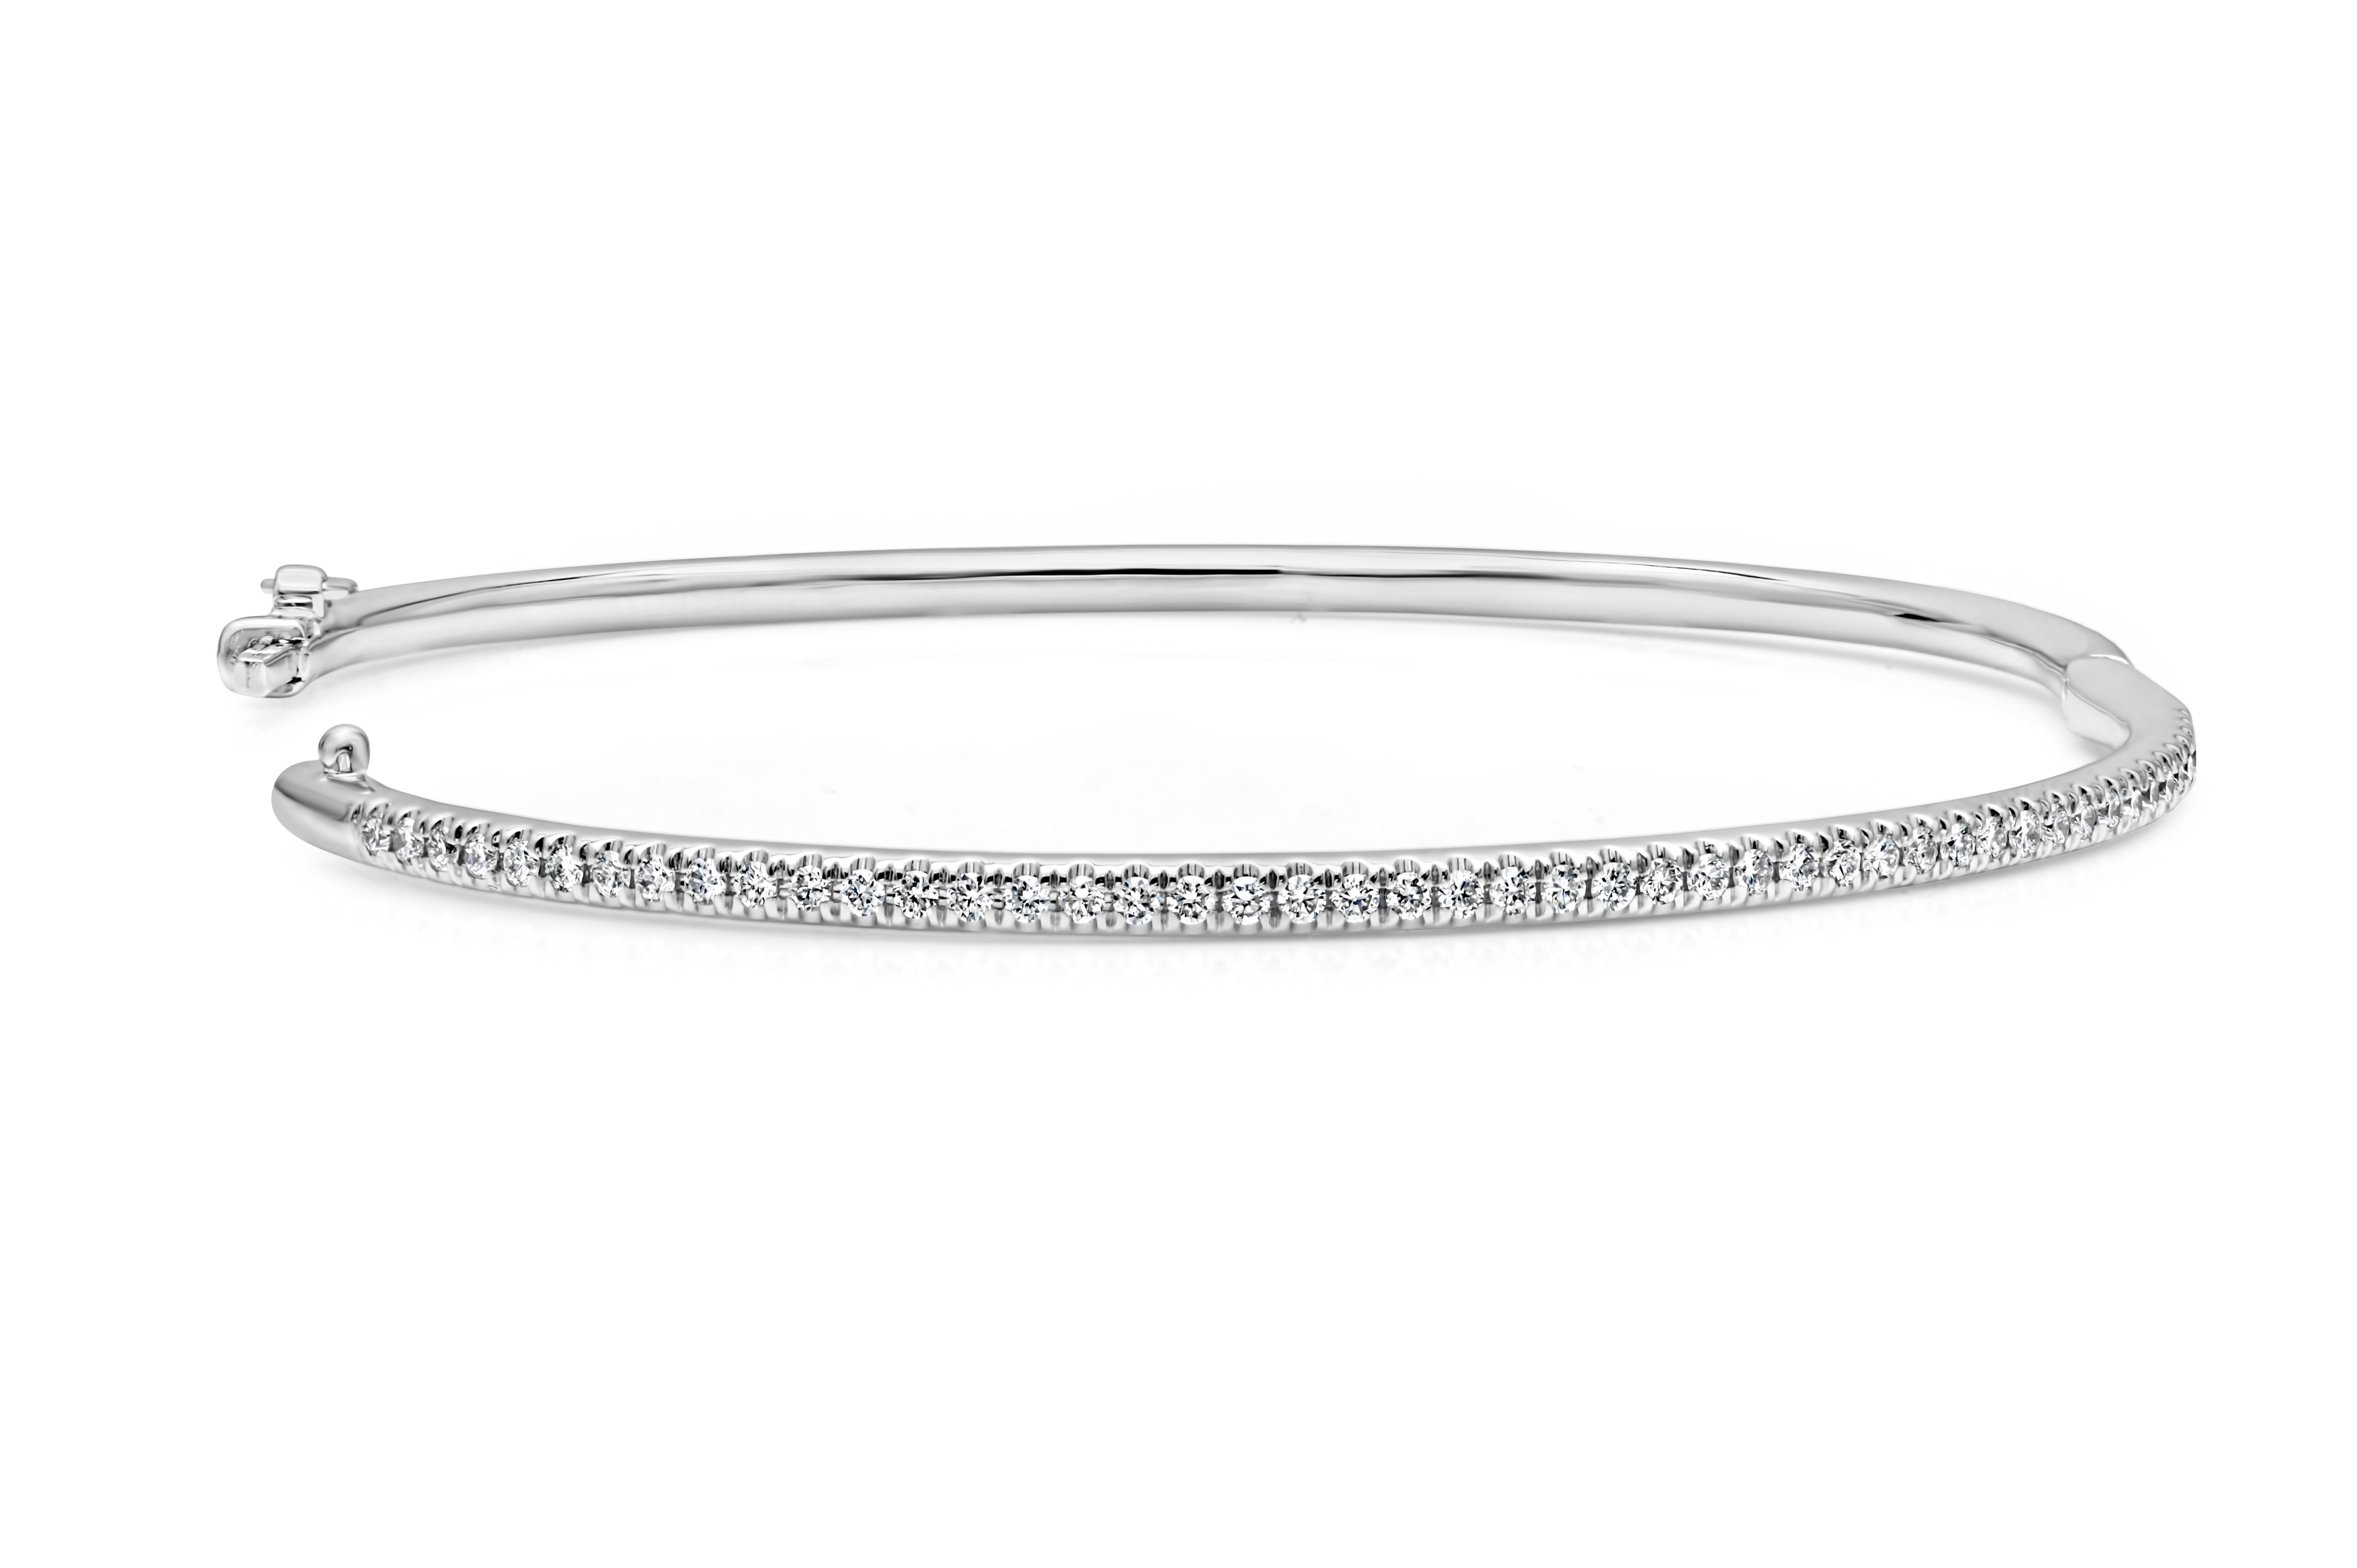 Ce bracelet simple mais élégant est serti de 47 diamants ronds de taille brillant pesant 0,50 carats au total, de couleur F et de pureté VS. Un fermoir permet d'enfiler et de porter le bracelet en toute sécurité. Finement réalisé en or blanc 14K et